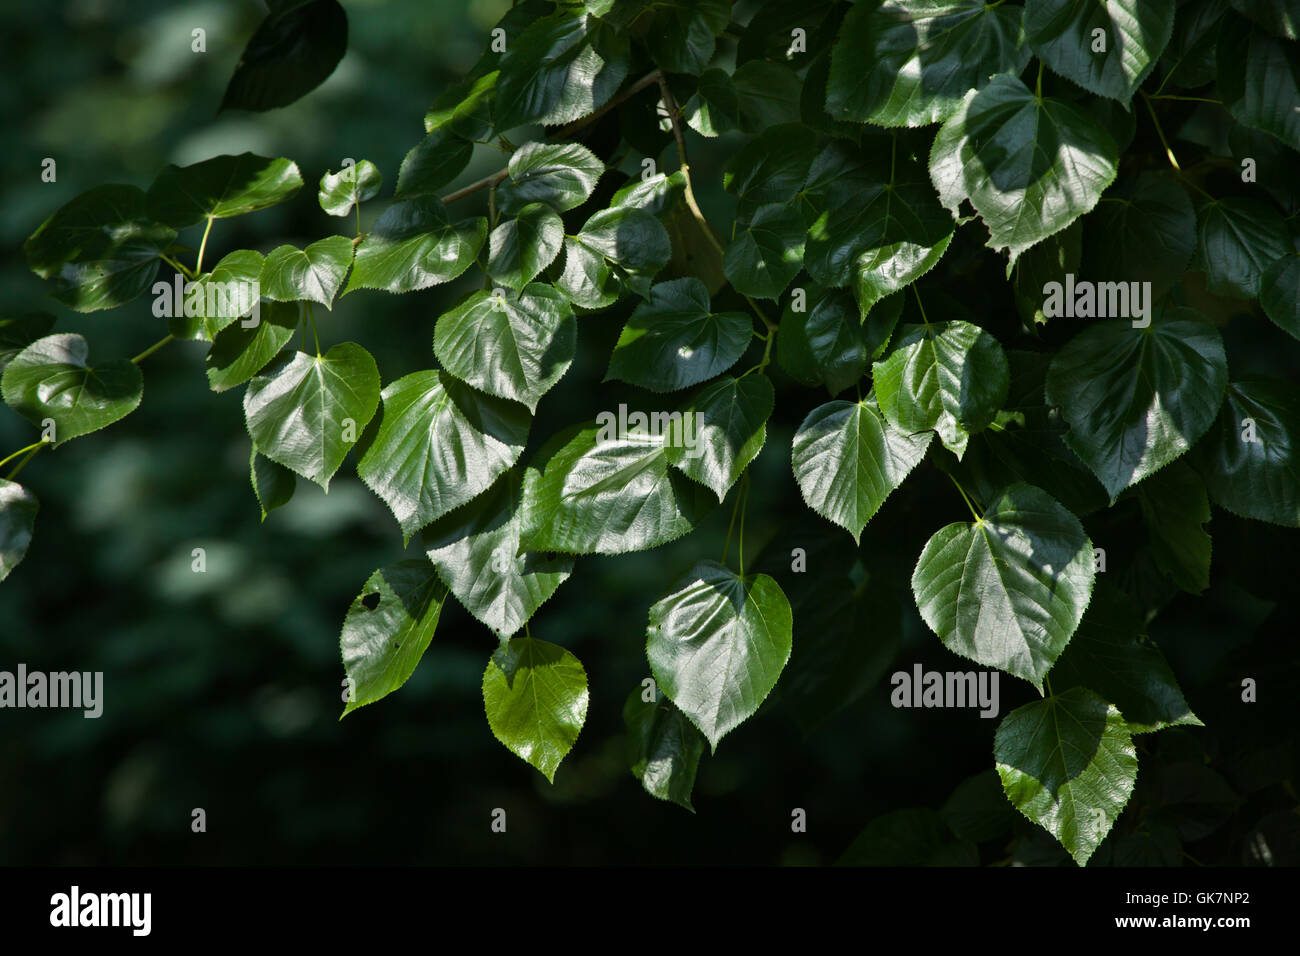 Caucasian linden (Tilia euchlora), also known as the Crimean linden. Stock Photo